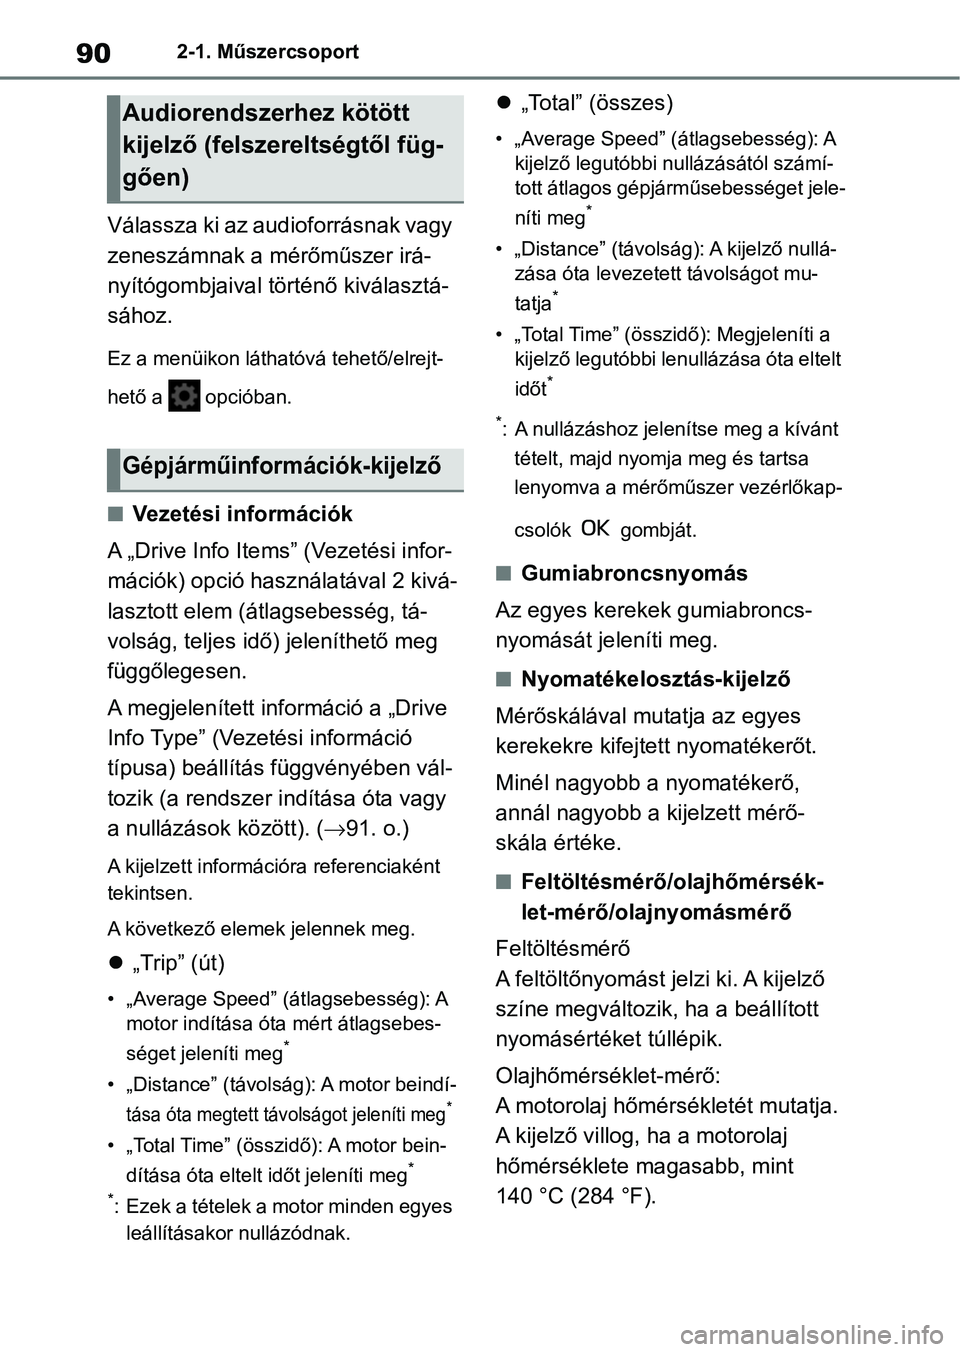 TOYOTA GR YARIS 2020  Kezelési útmutató (in Hungarian) 902-1. Műszercsoport
Válassza ki az audioforrásnak vagy 
zeneszámnak a mérőműszer irá-
nyítógombjaival történő kiválasztá-
sához.
Ez a menüikon láthatóvá tehető/elrejt-
hető a   